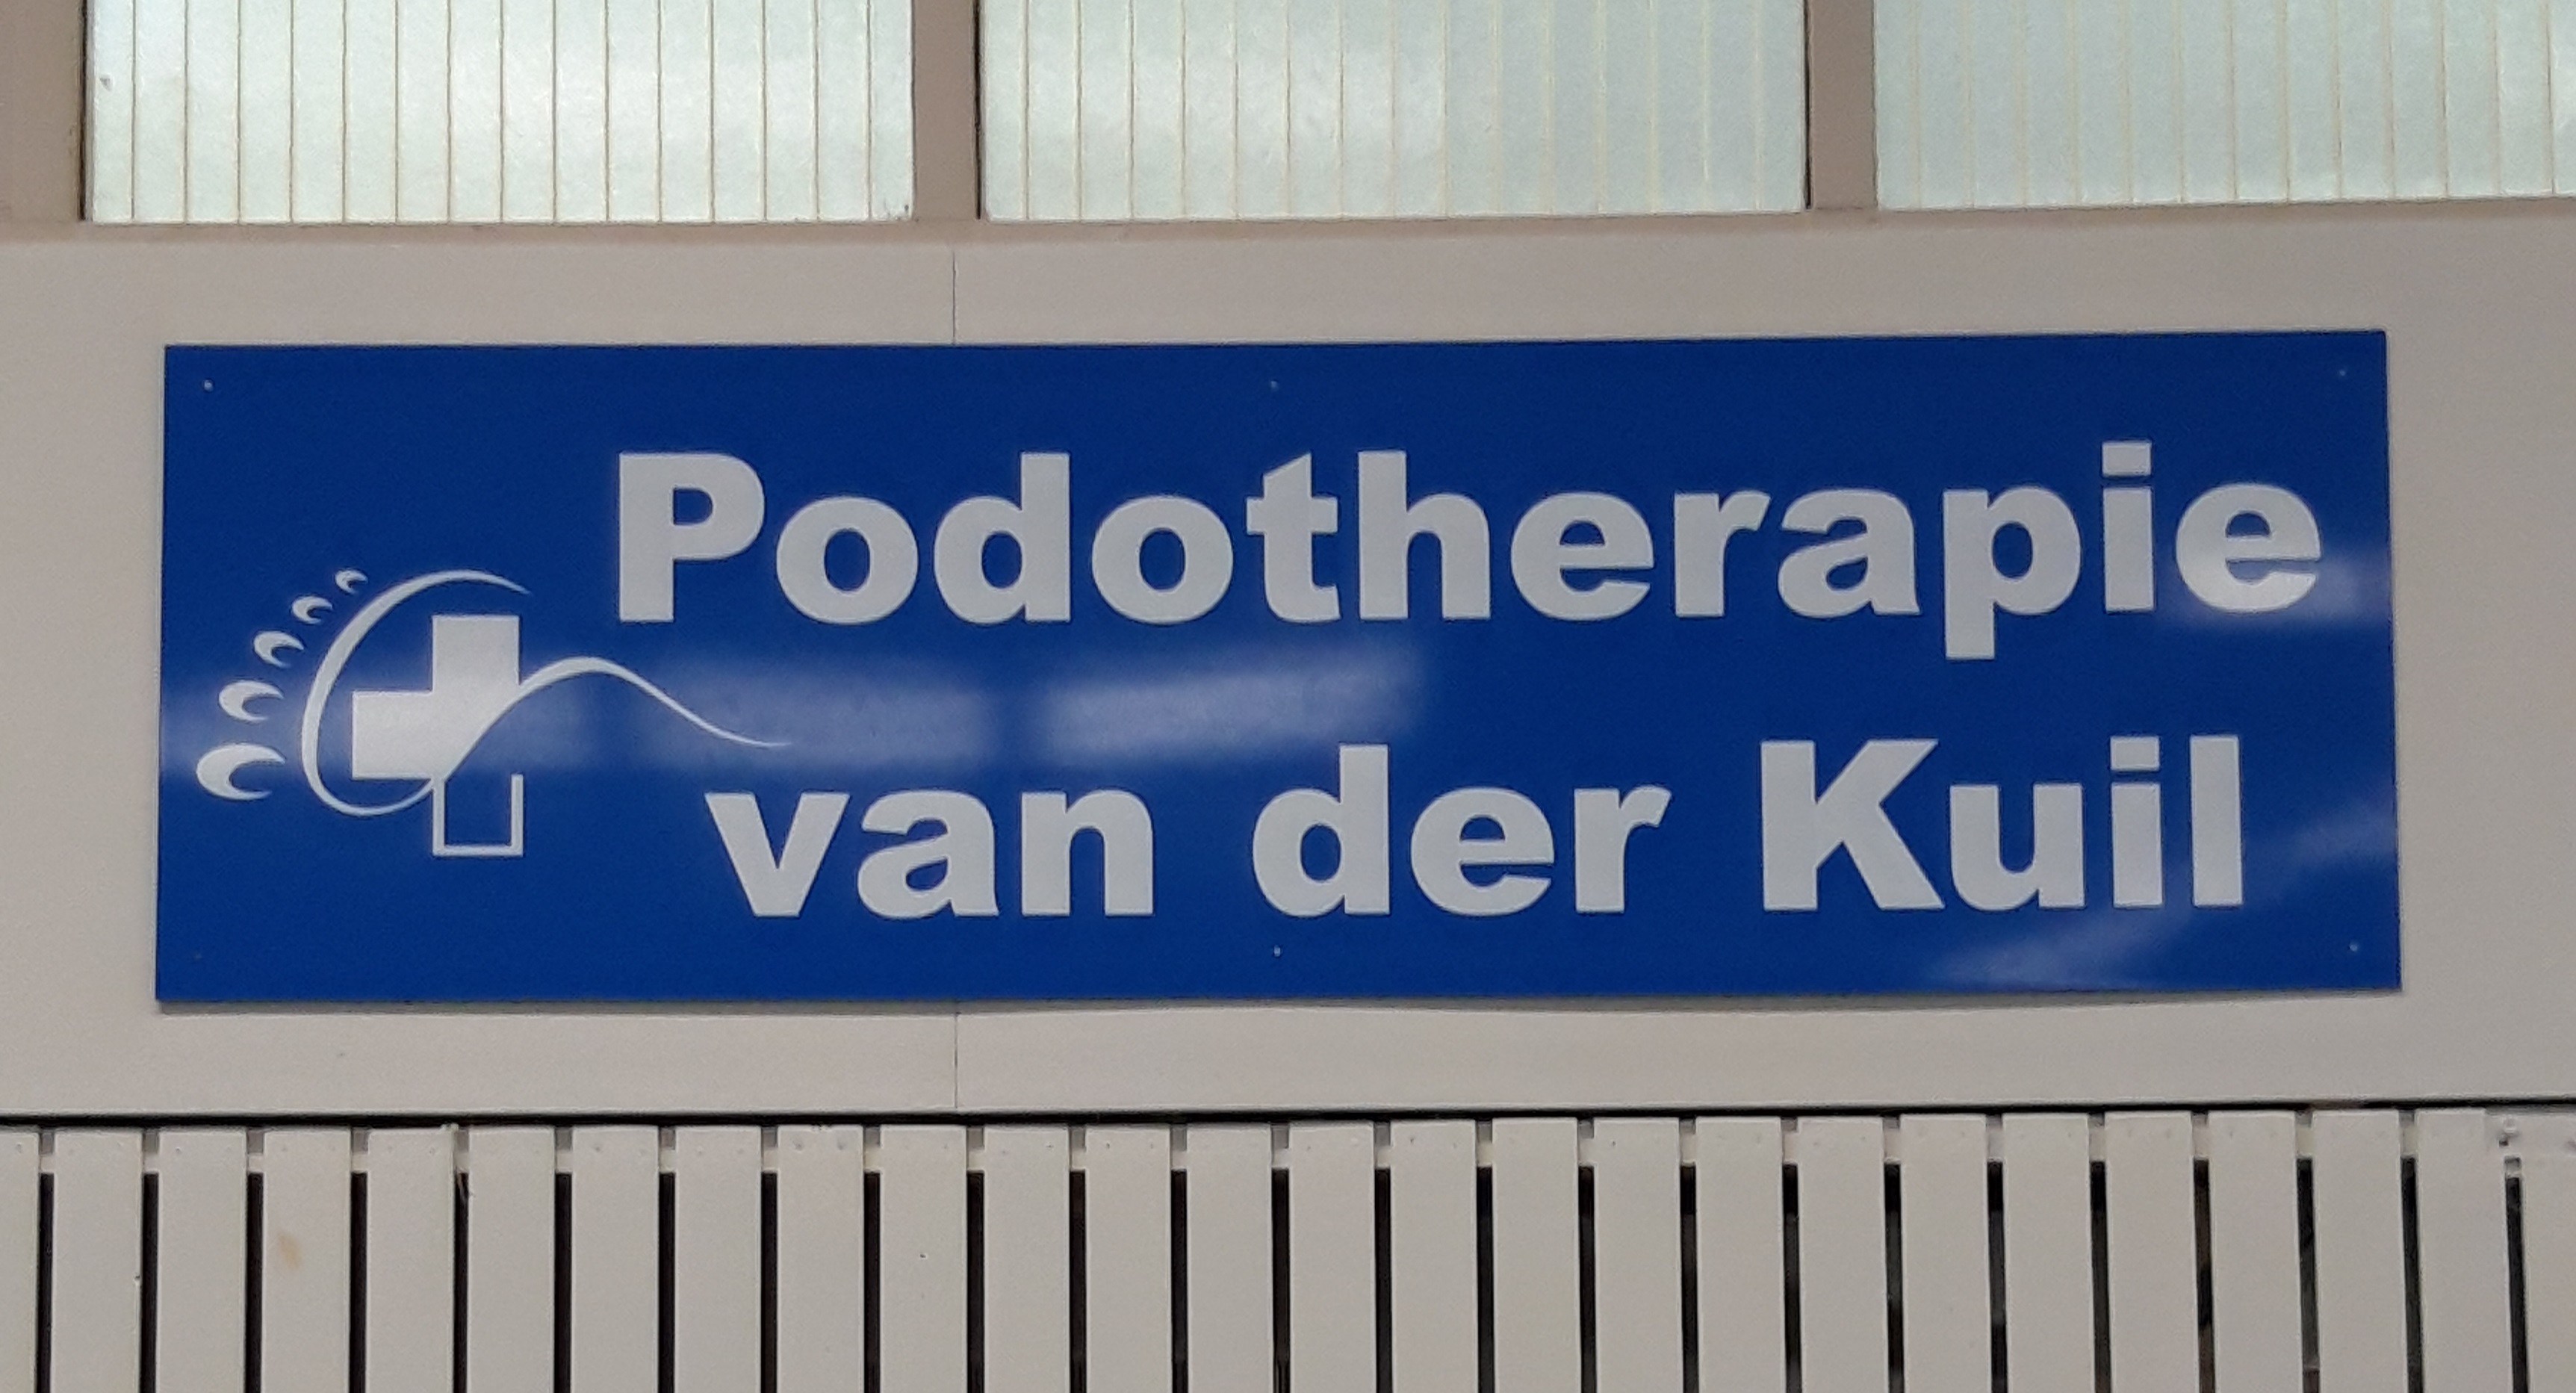 Podotherapie van der Kuil1